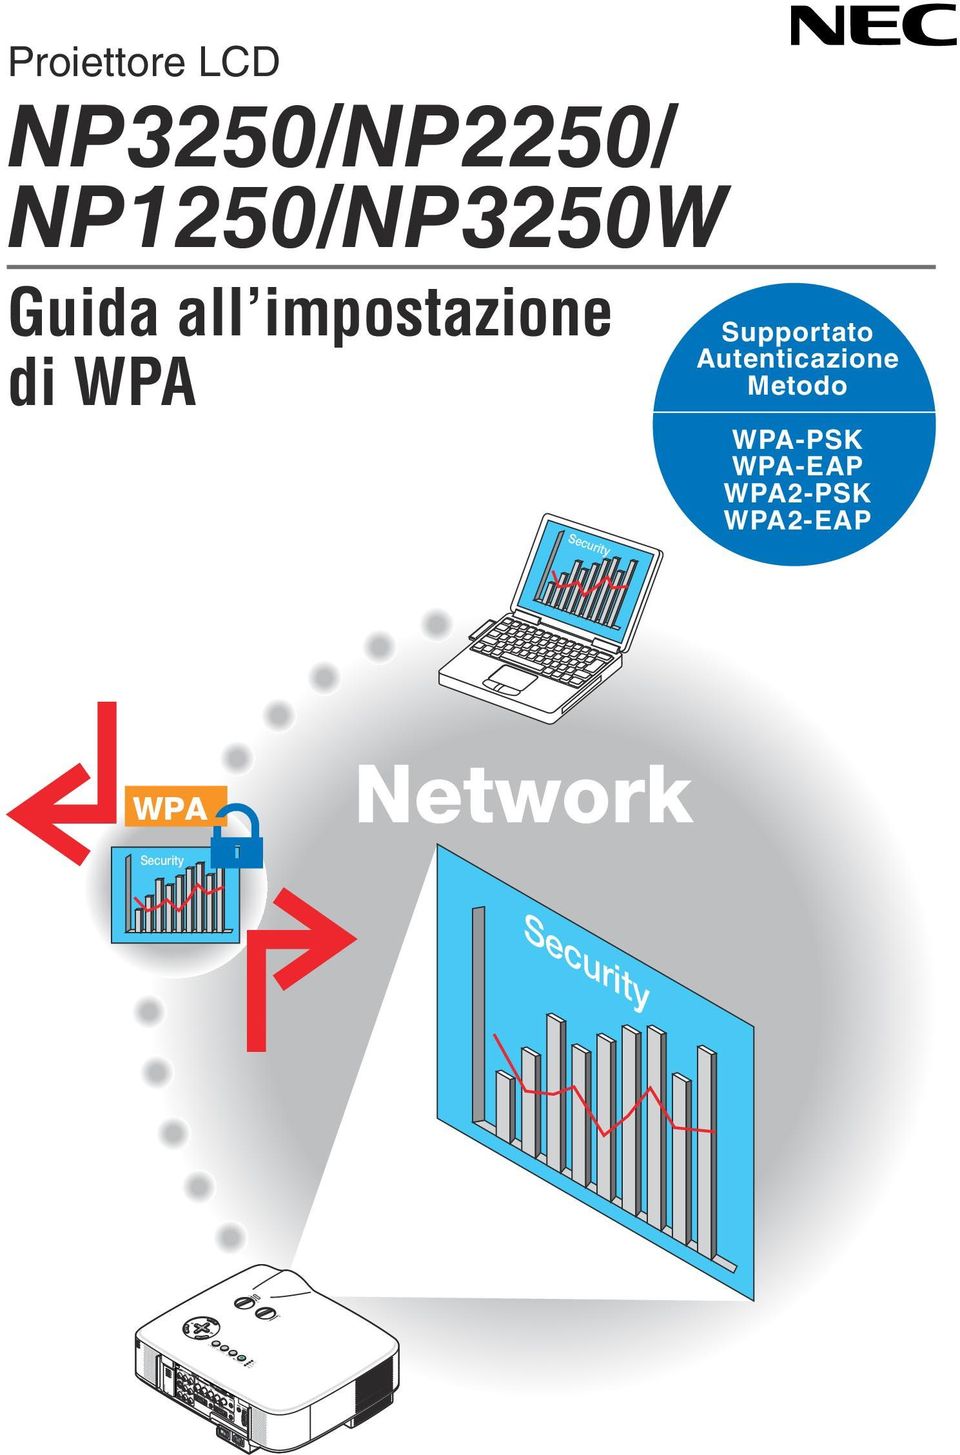 all impostazione di WPA Security Supportato Autenticazione Metodo WPA-PSK